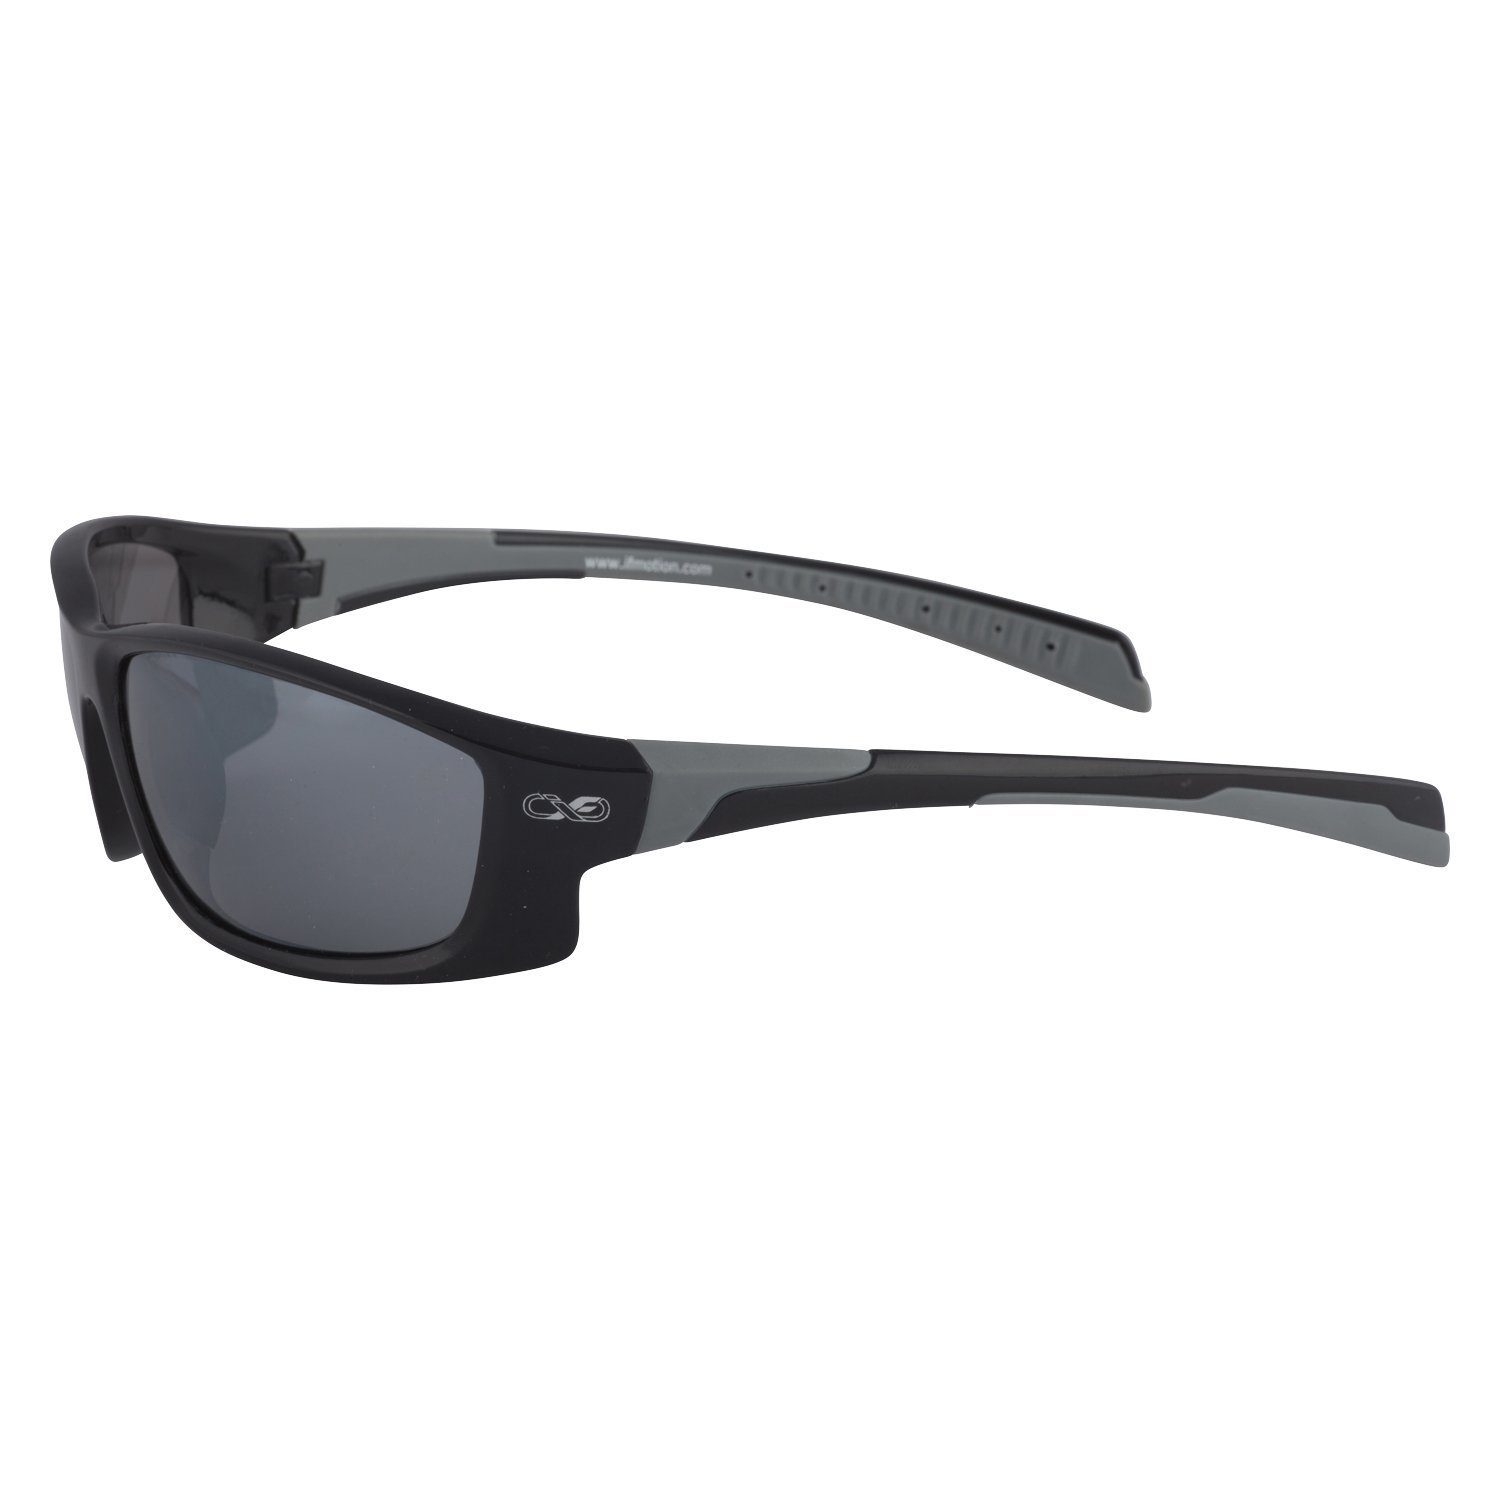 / Infinite Sportbrille (Mit Aufbewahrungsbeutel 3 Viwanda Reinigungstuch) Sonnenbrille Farben in Eins